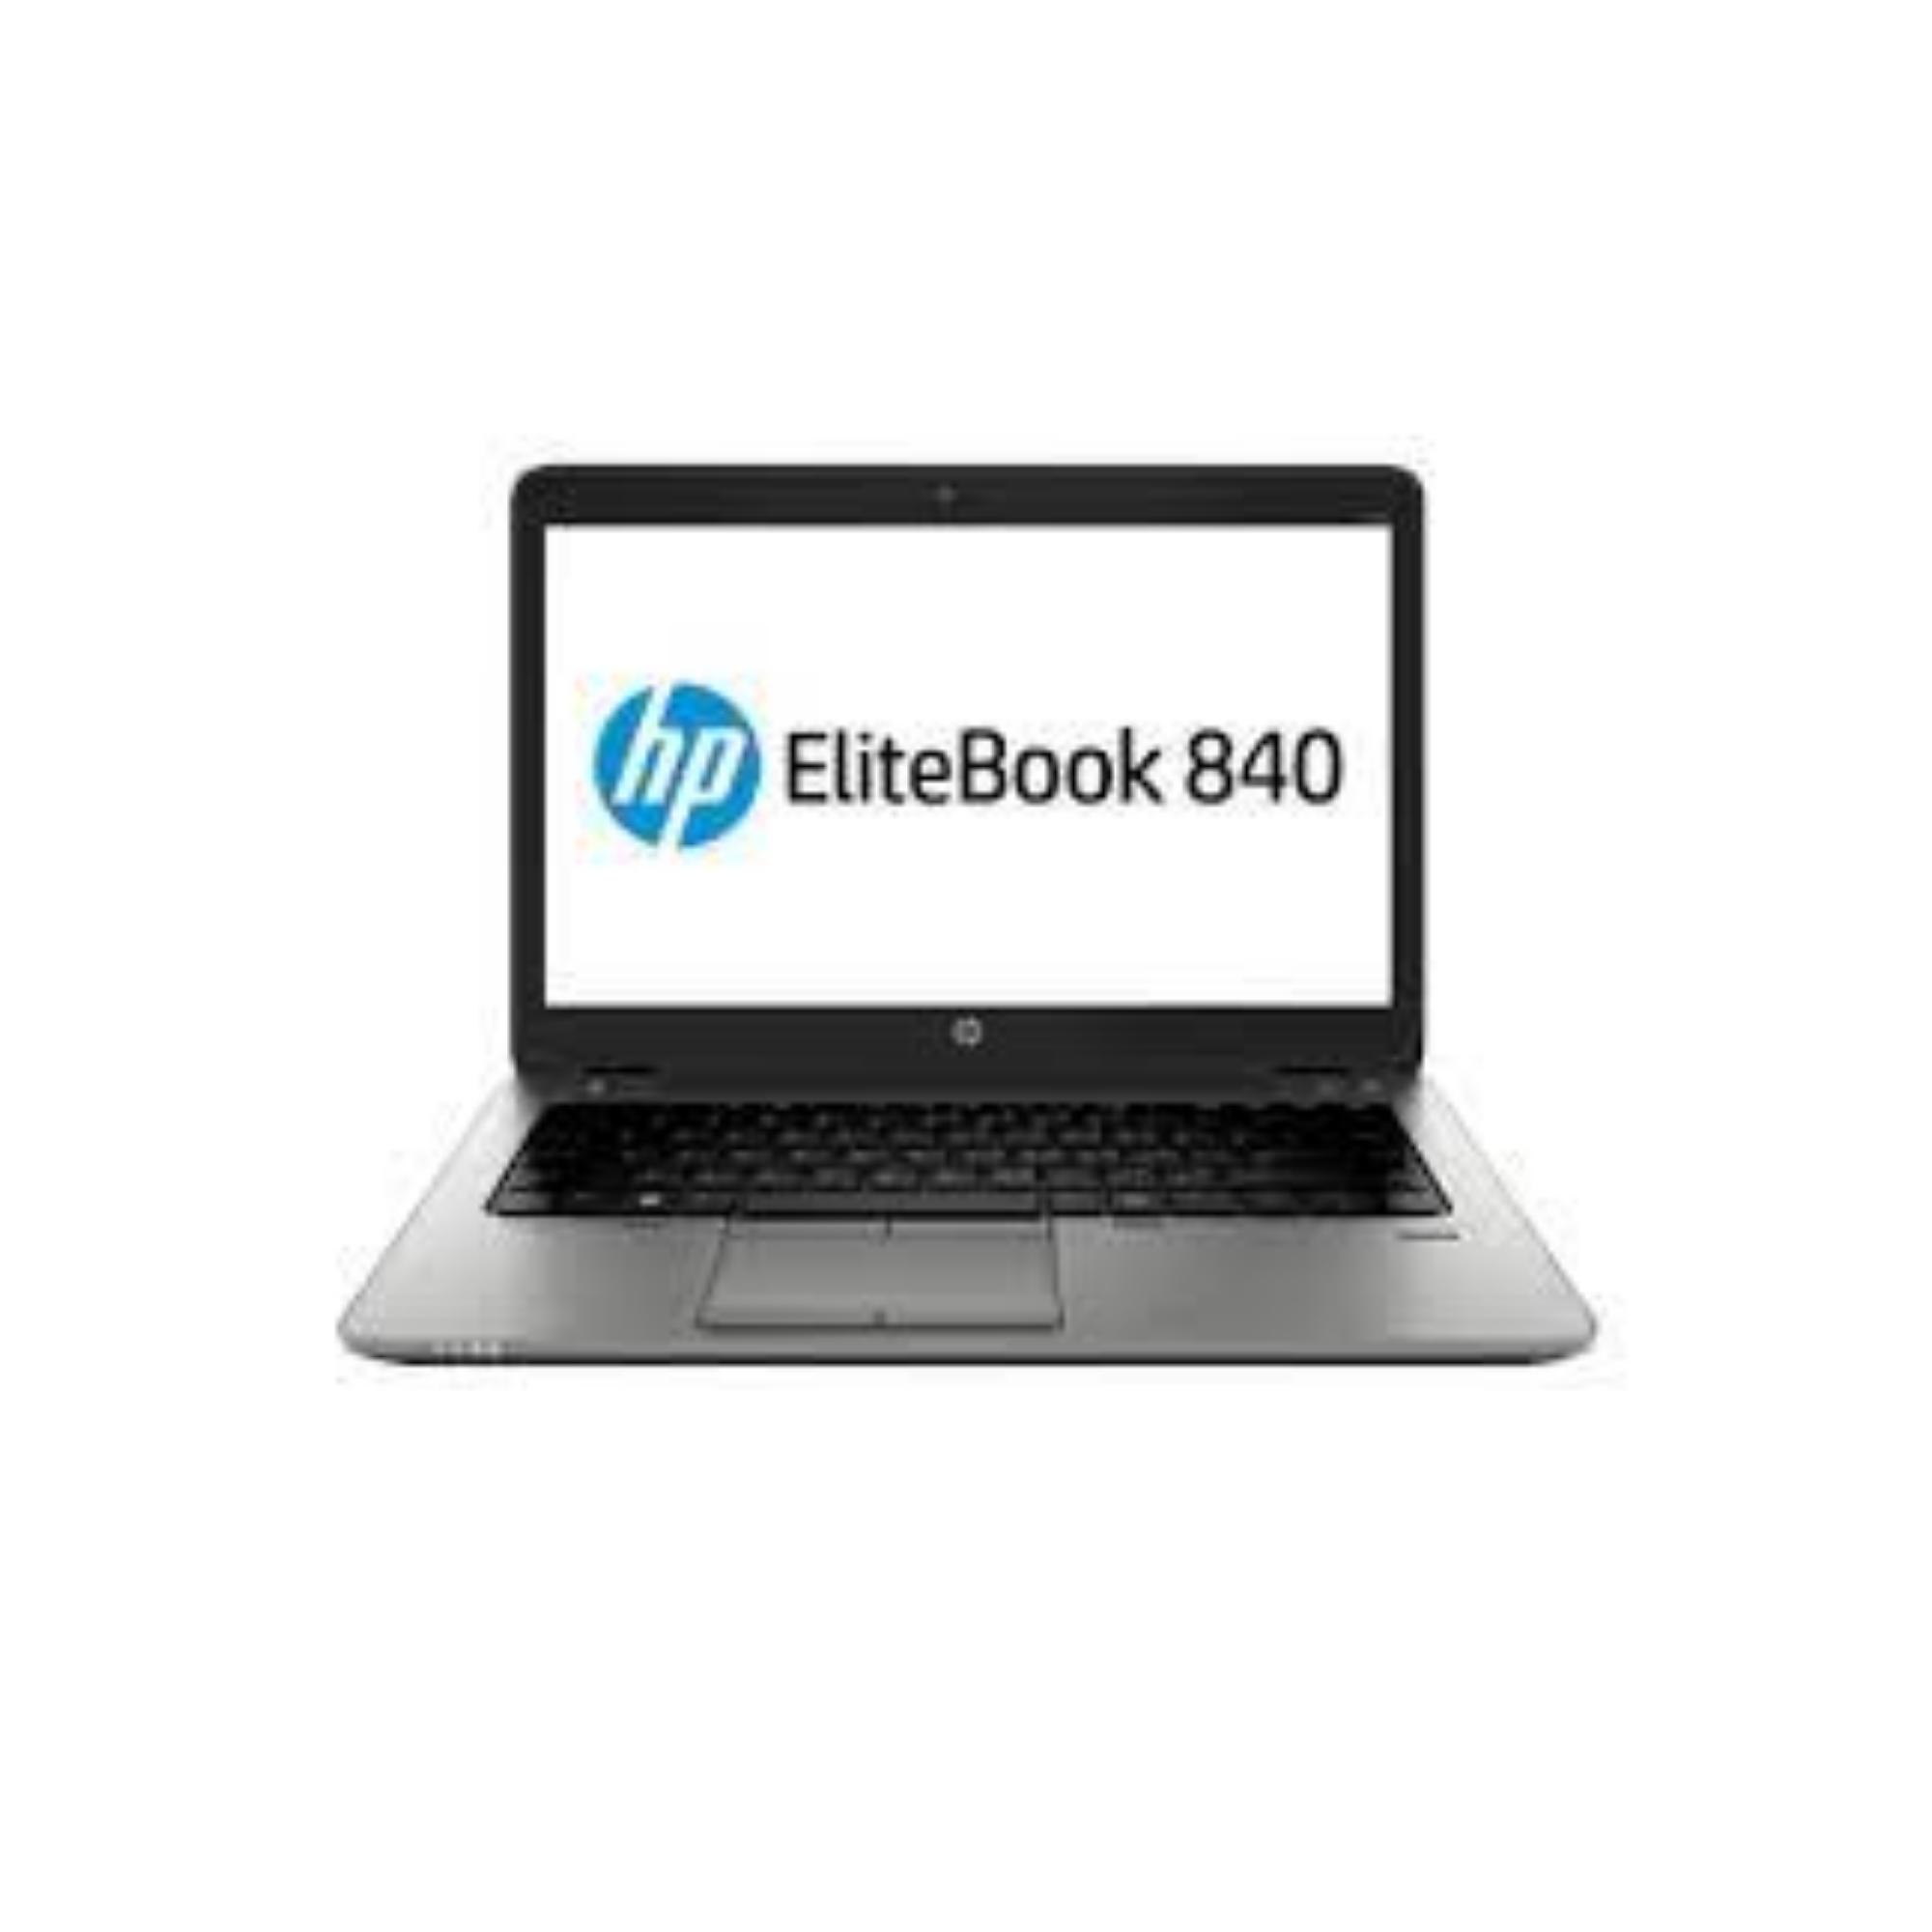 HP ELITEBOOK 840 G3 / I7-6600U / 480GB SSDM2 / 8GB / 14.1″ / INTEL HD 520 / W10P